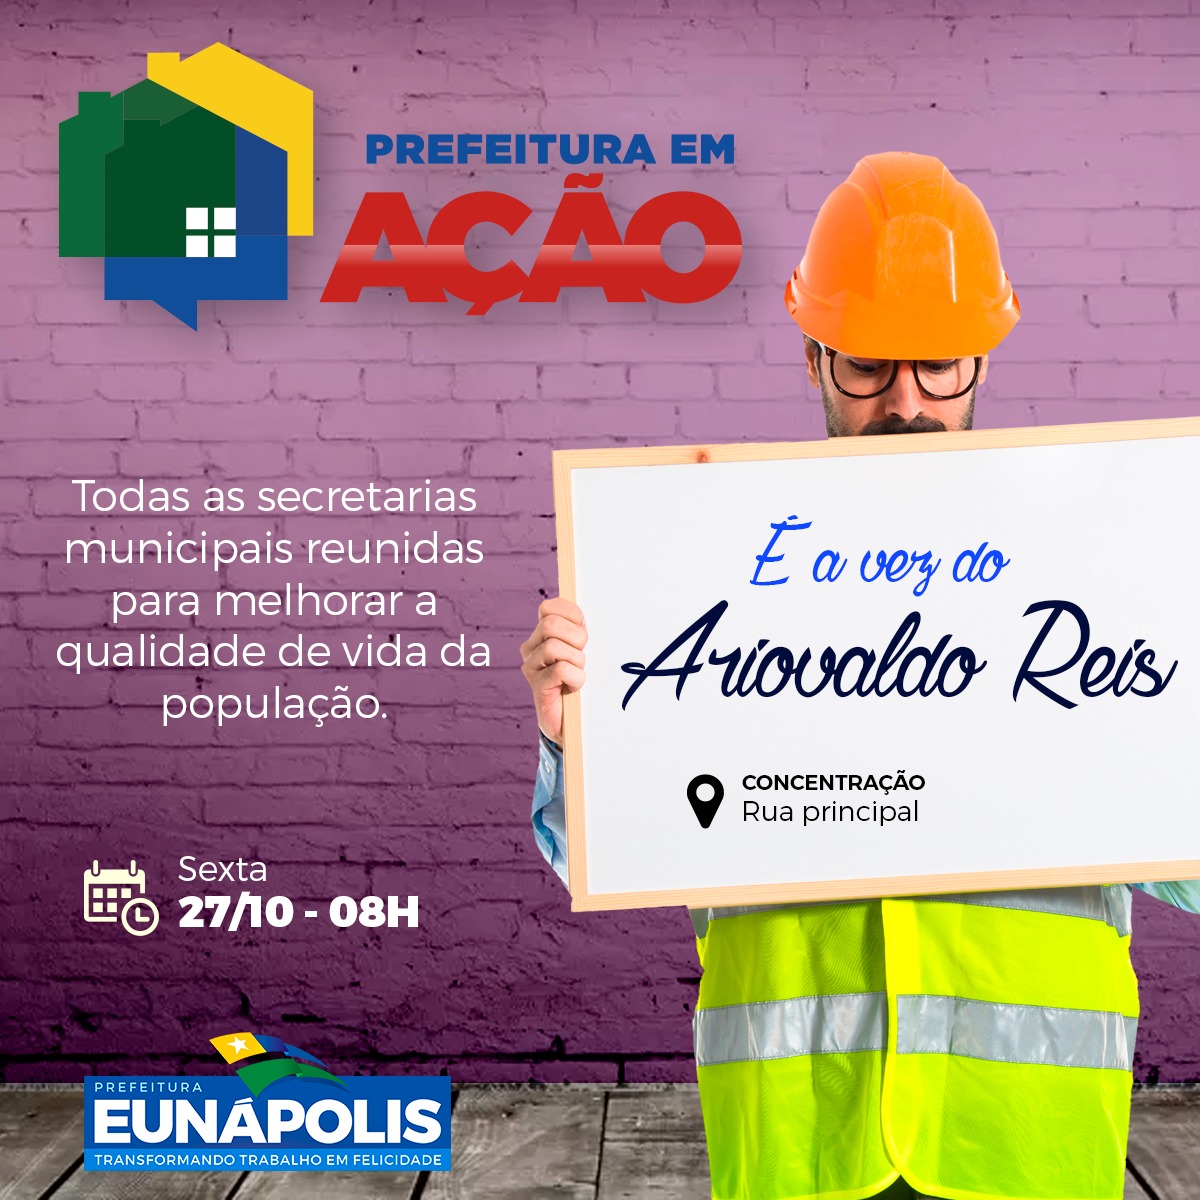 Prefeitura em Ação será no bairro Ariovaldo Reis nesta sexta-feira (27/10) 2